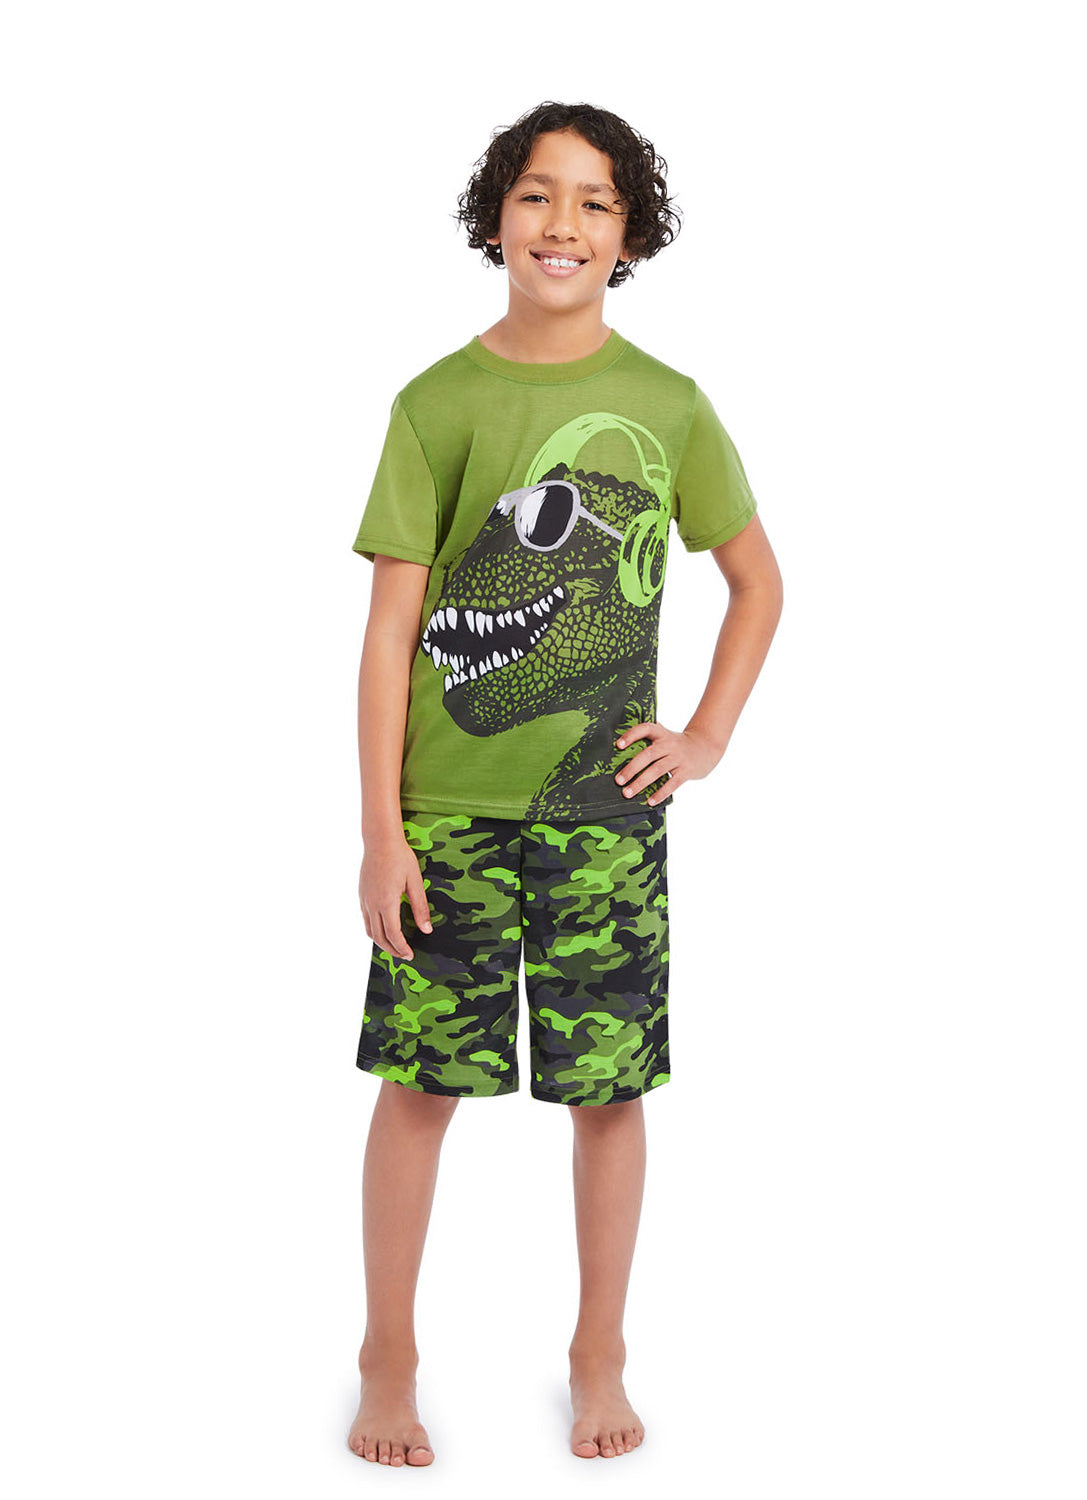 Boy wearing Dino t-shirt print with Camo shorts (green)